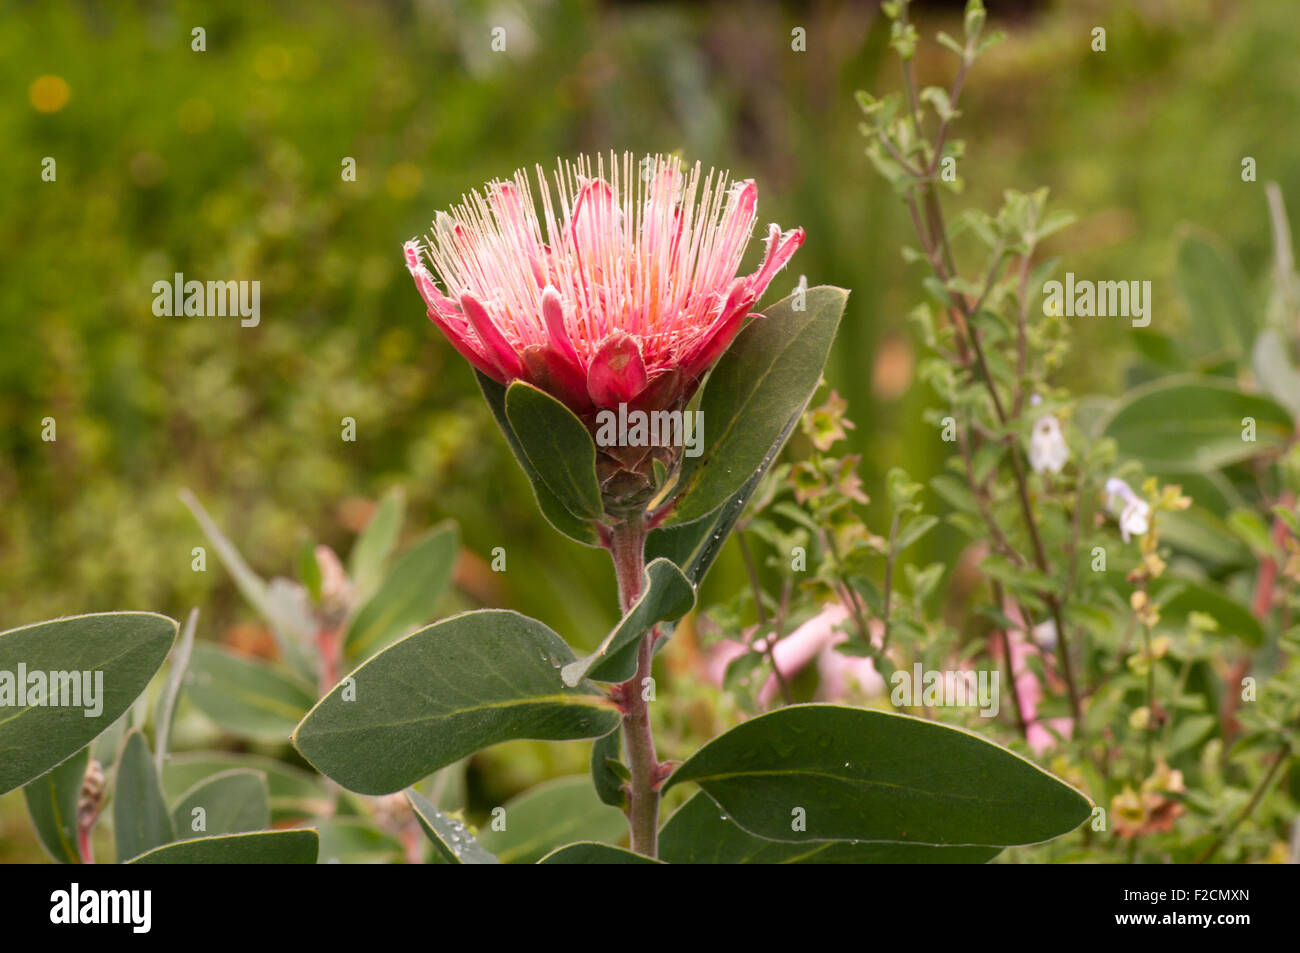 Flower Of The Protea Lacticolor Hottentot sugarbush Stock Photo